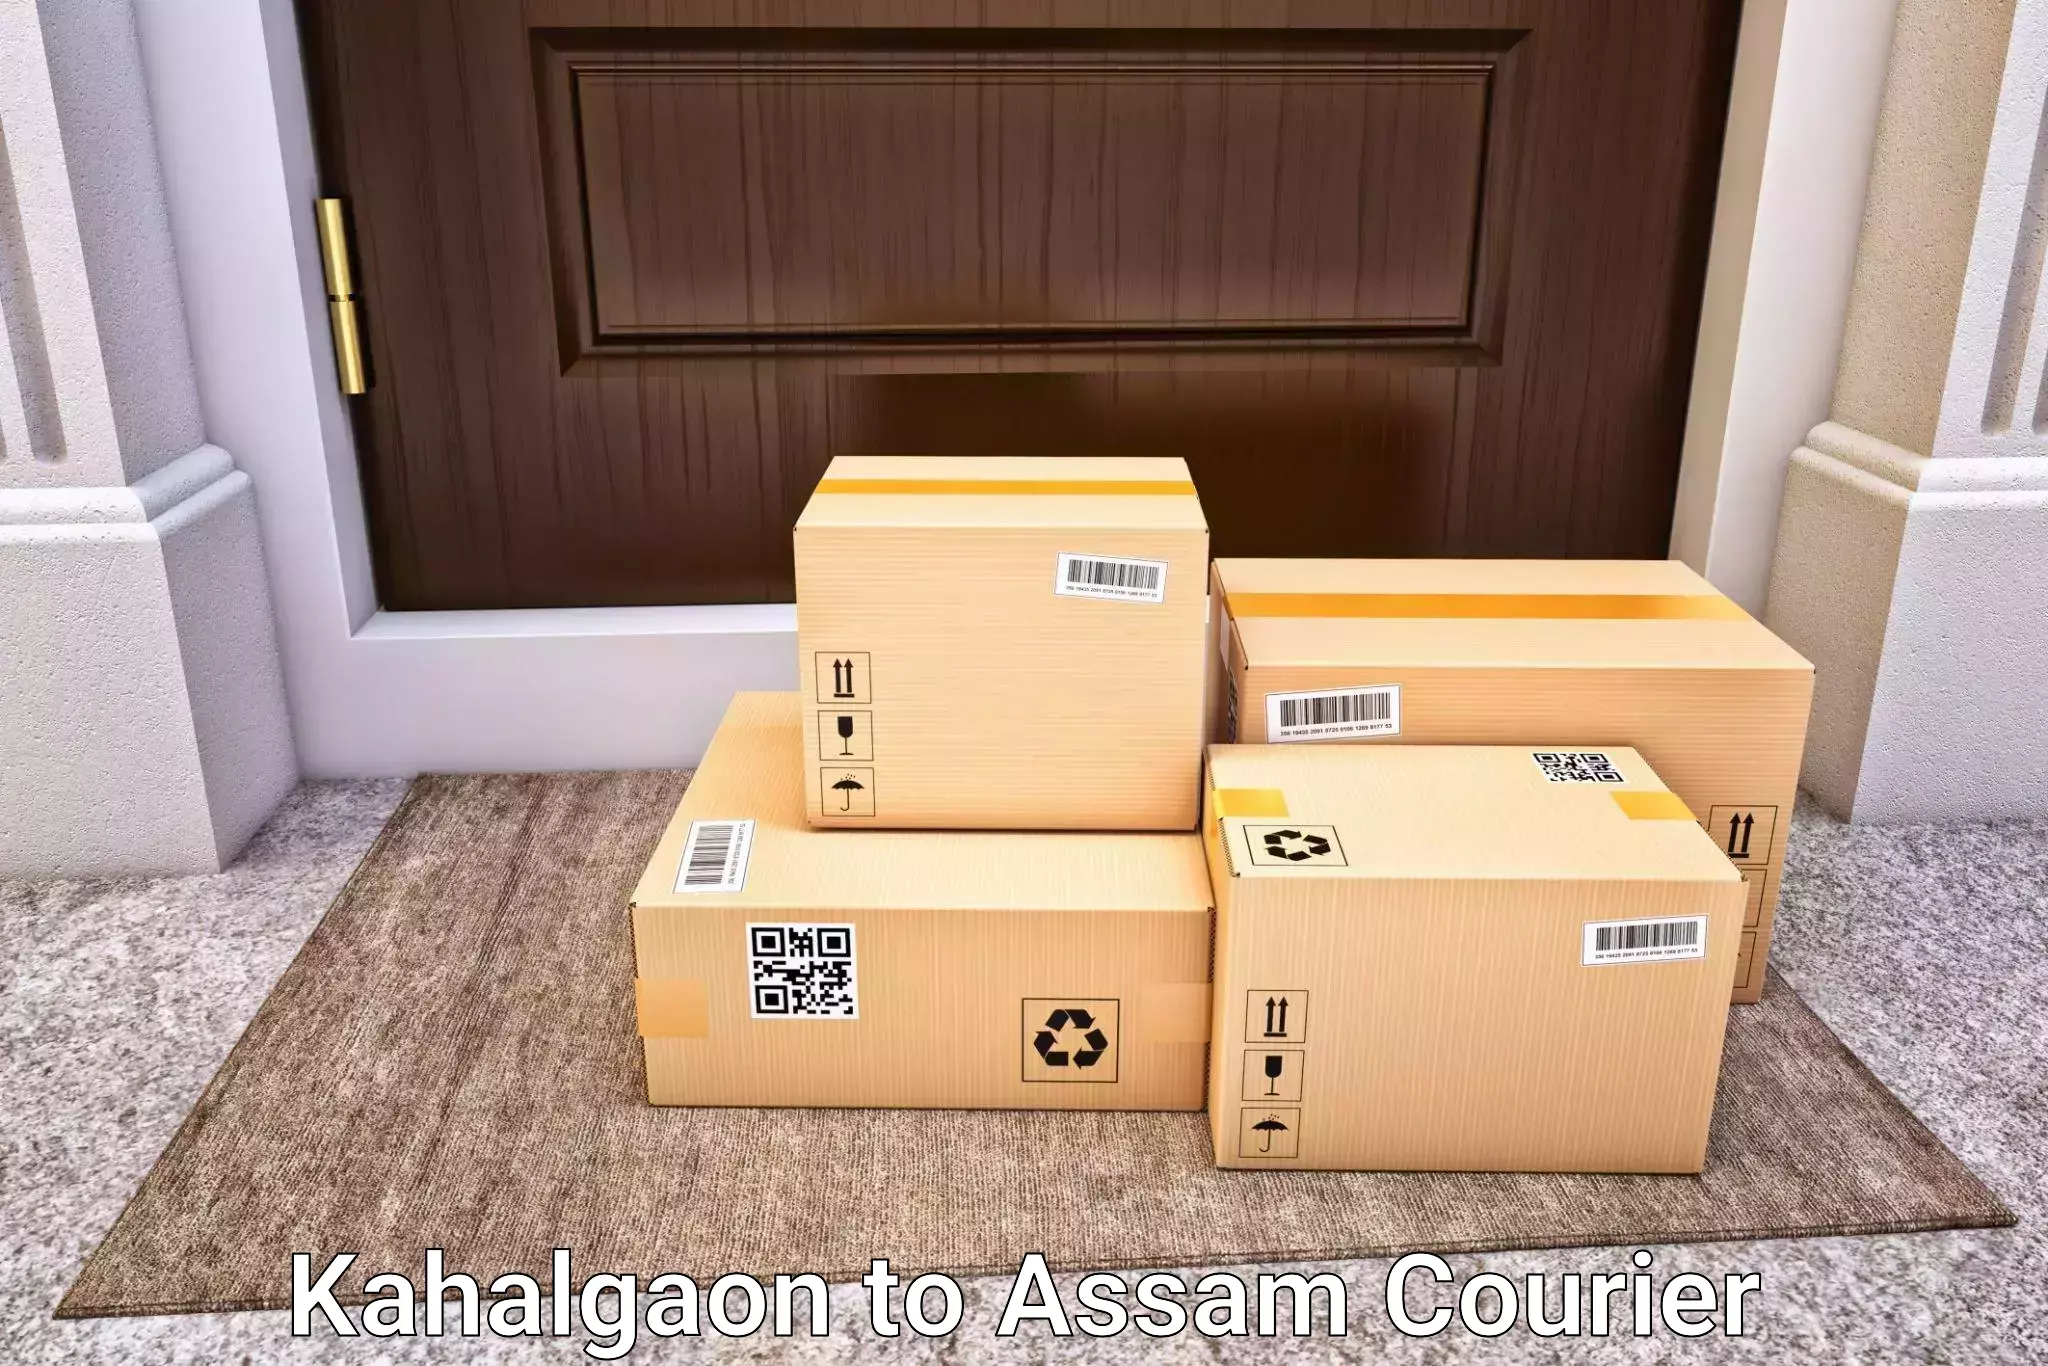 Luggage delivery system Kahalgaon to Lalapur Hailakandi